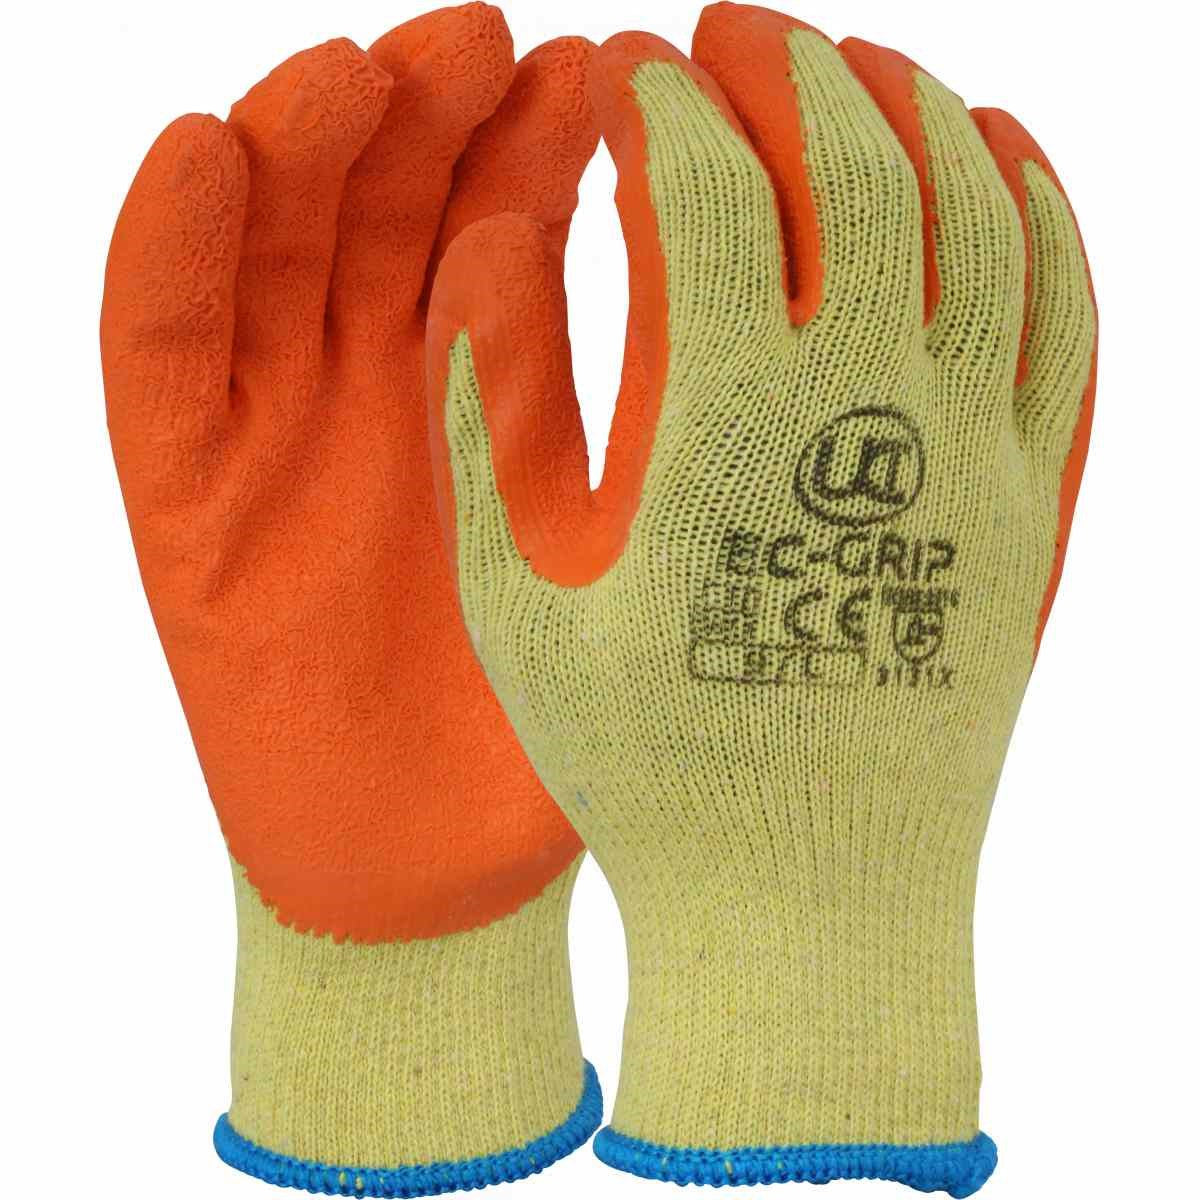 Ultimate Industrial EC-Grip Latex Palm Gloves, Orange